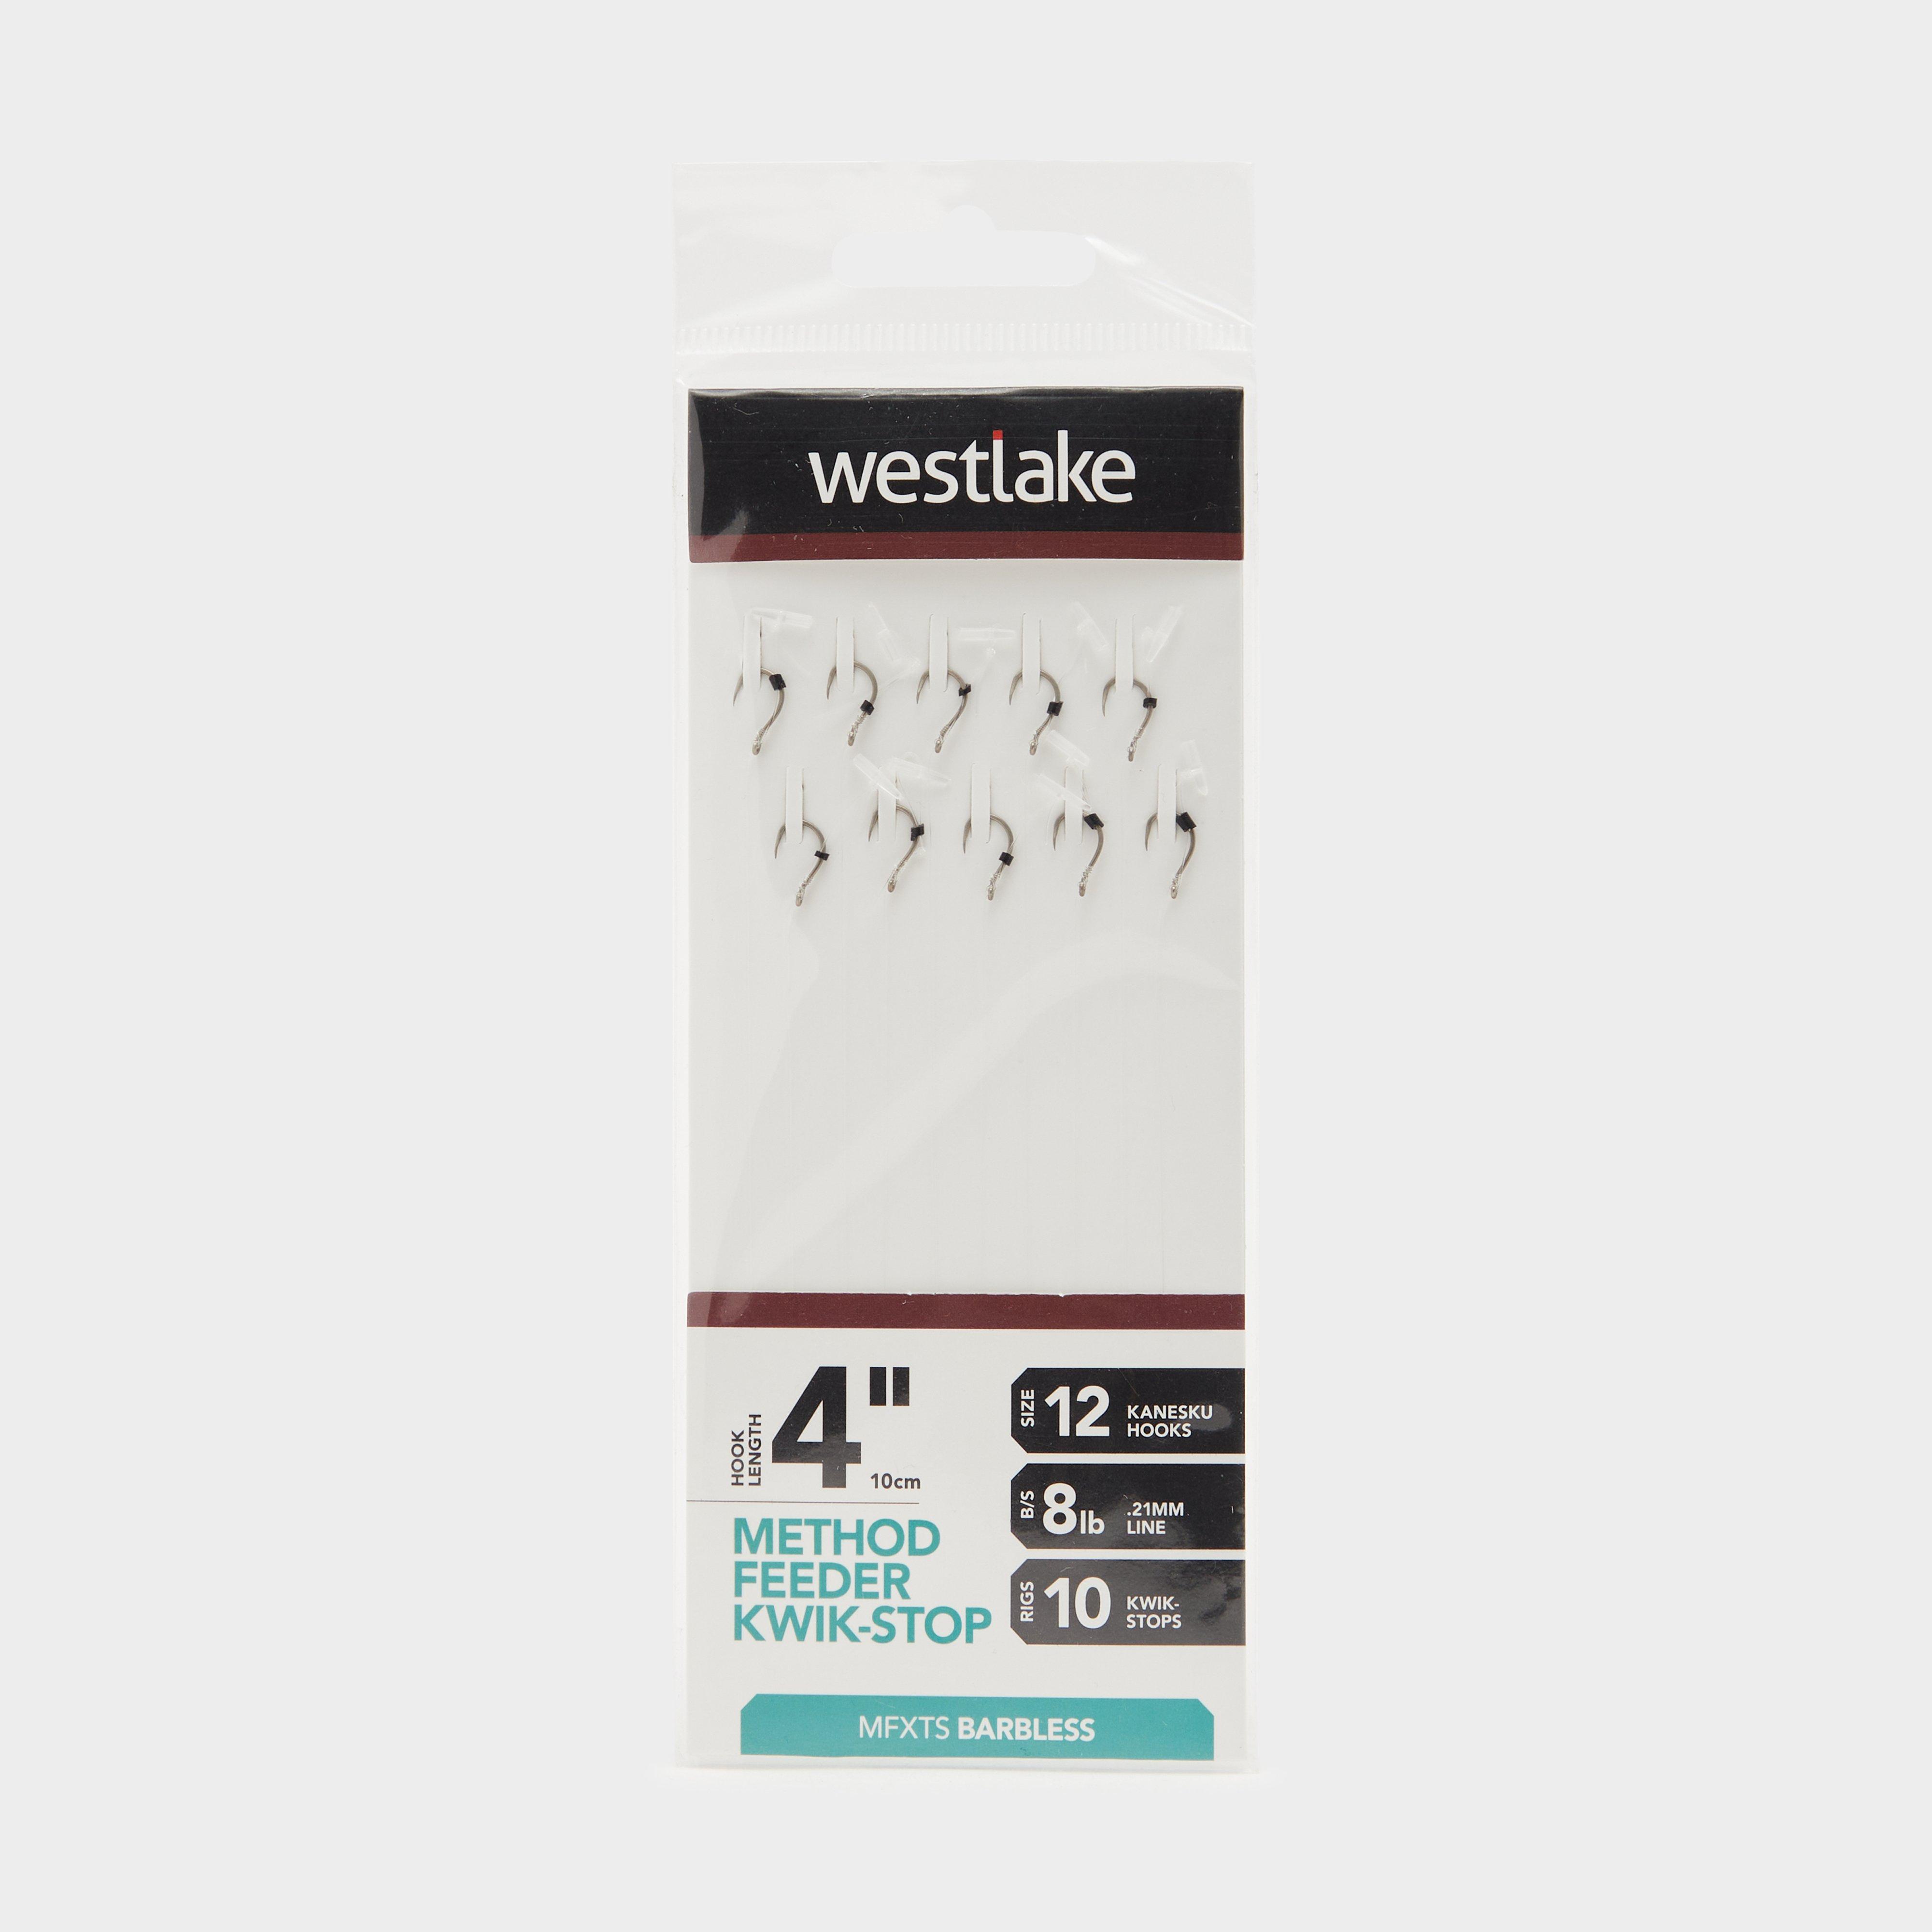 Westlake Method Feeder Kwik-stop Rig 4 Size 12 - Silver/sto  Silver/sto